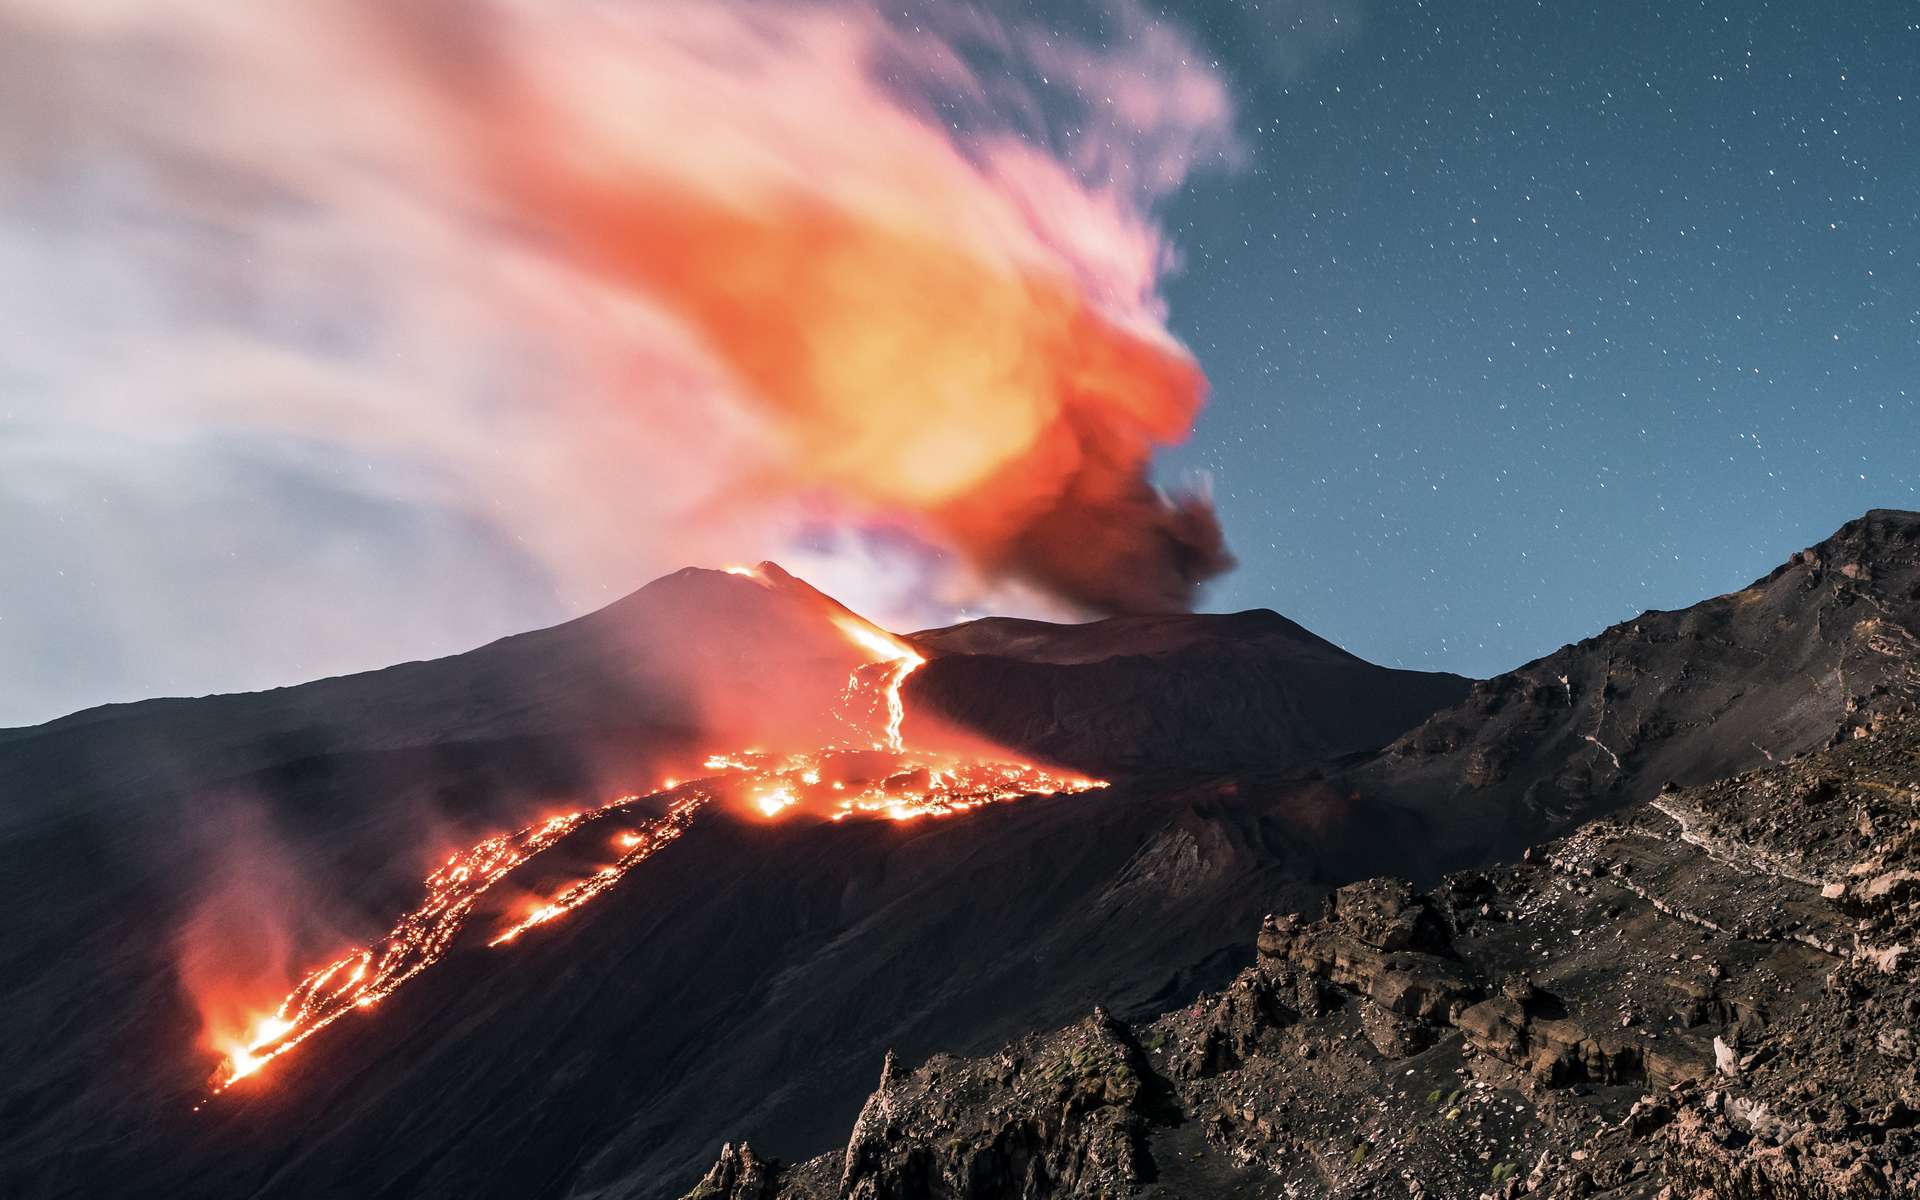 Trois grands volcans dangereux se sont réveillés ces derniers jours